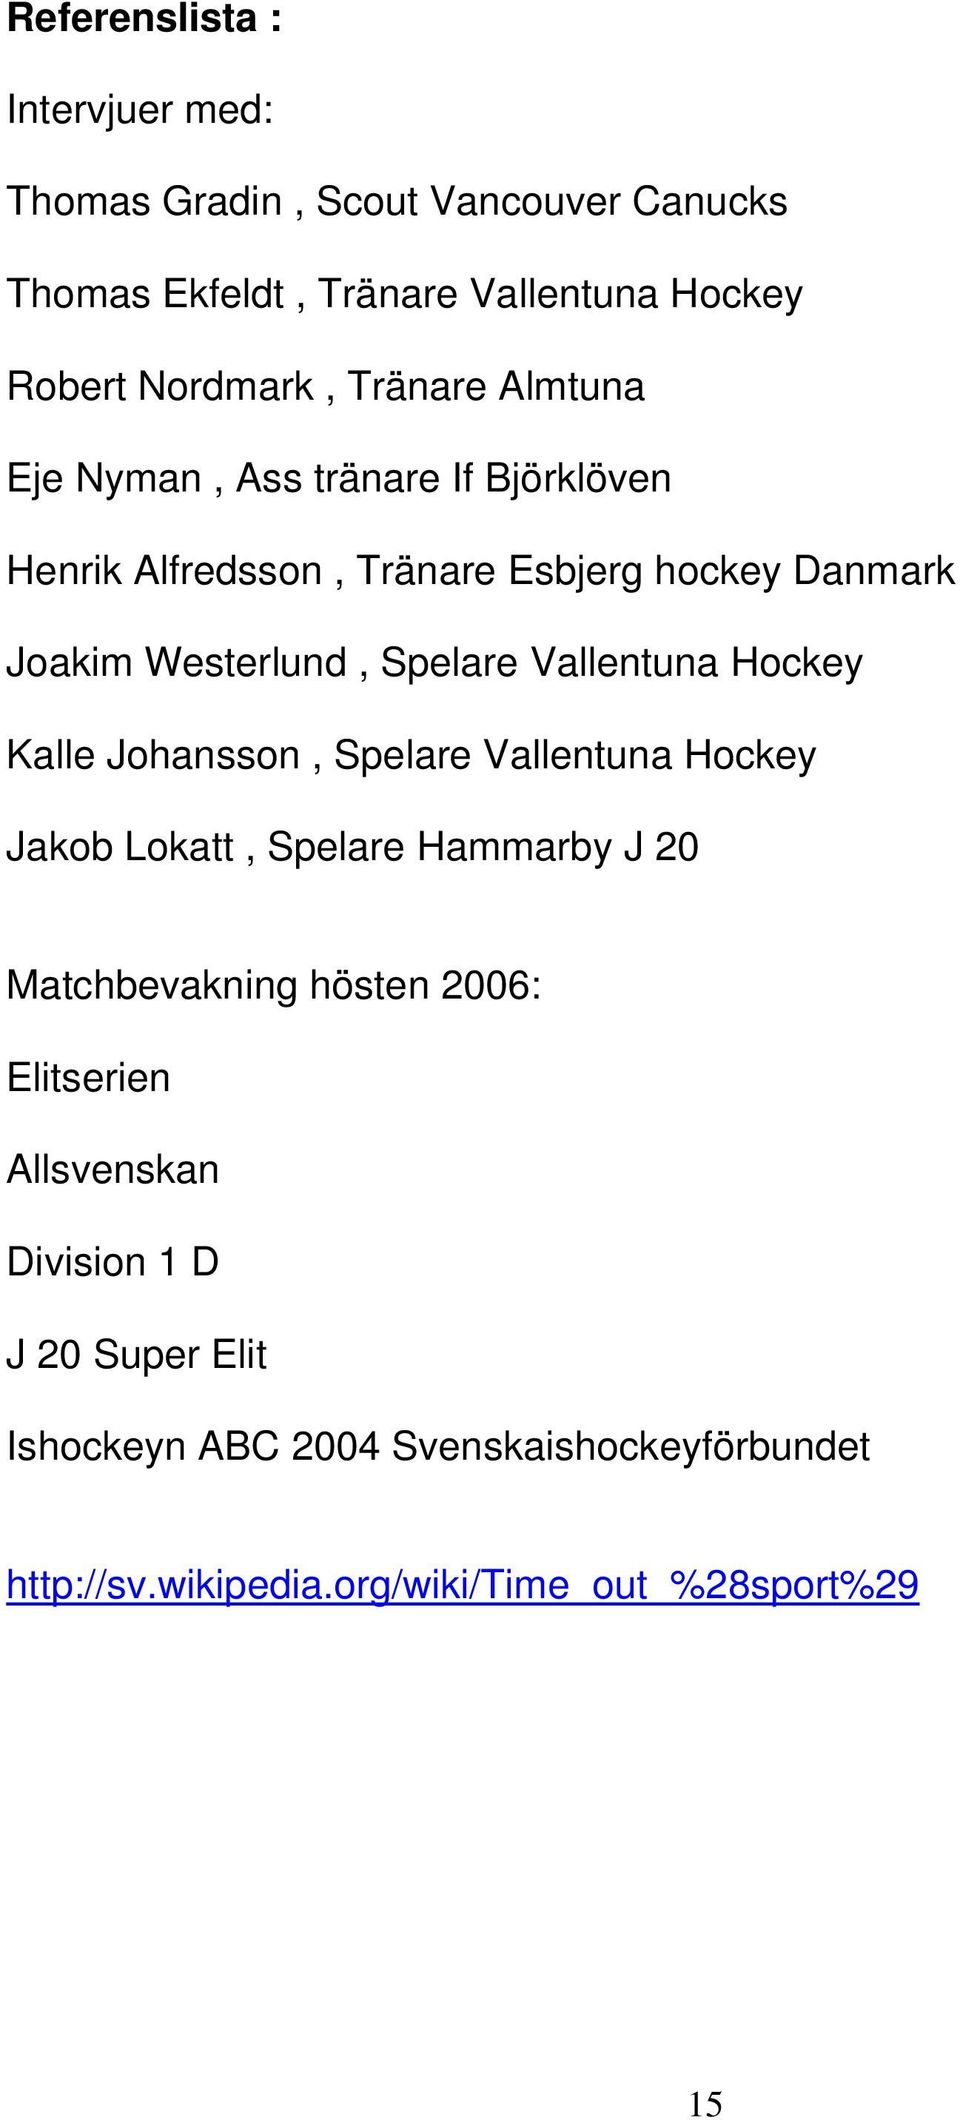 Vallentuna Hockey Kalle Johansson, Spelare Vallentuna Hockey Jakob Lokatt, Spelare Hammarby J 20 Matchbevakning hösten 2006: